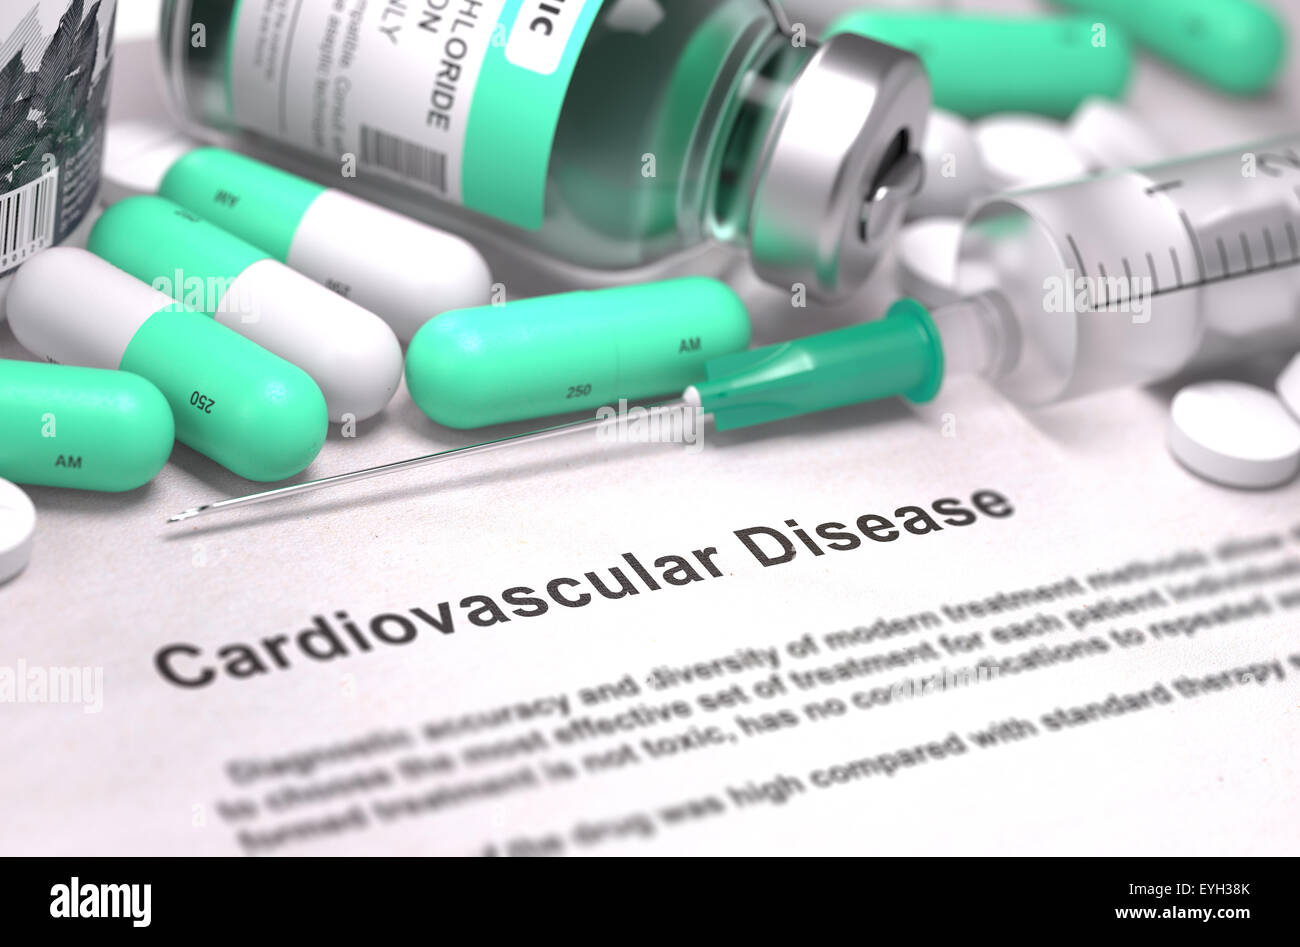 Diagnosis - Cardiovascular Disease. Medical Concept. Stock Photo